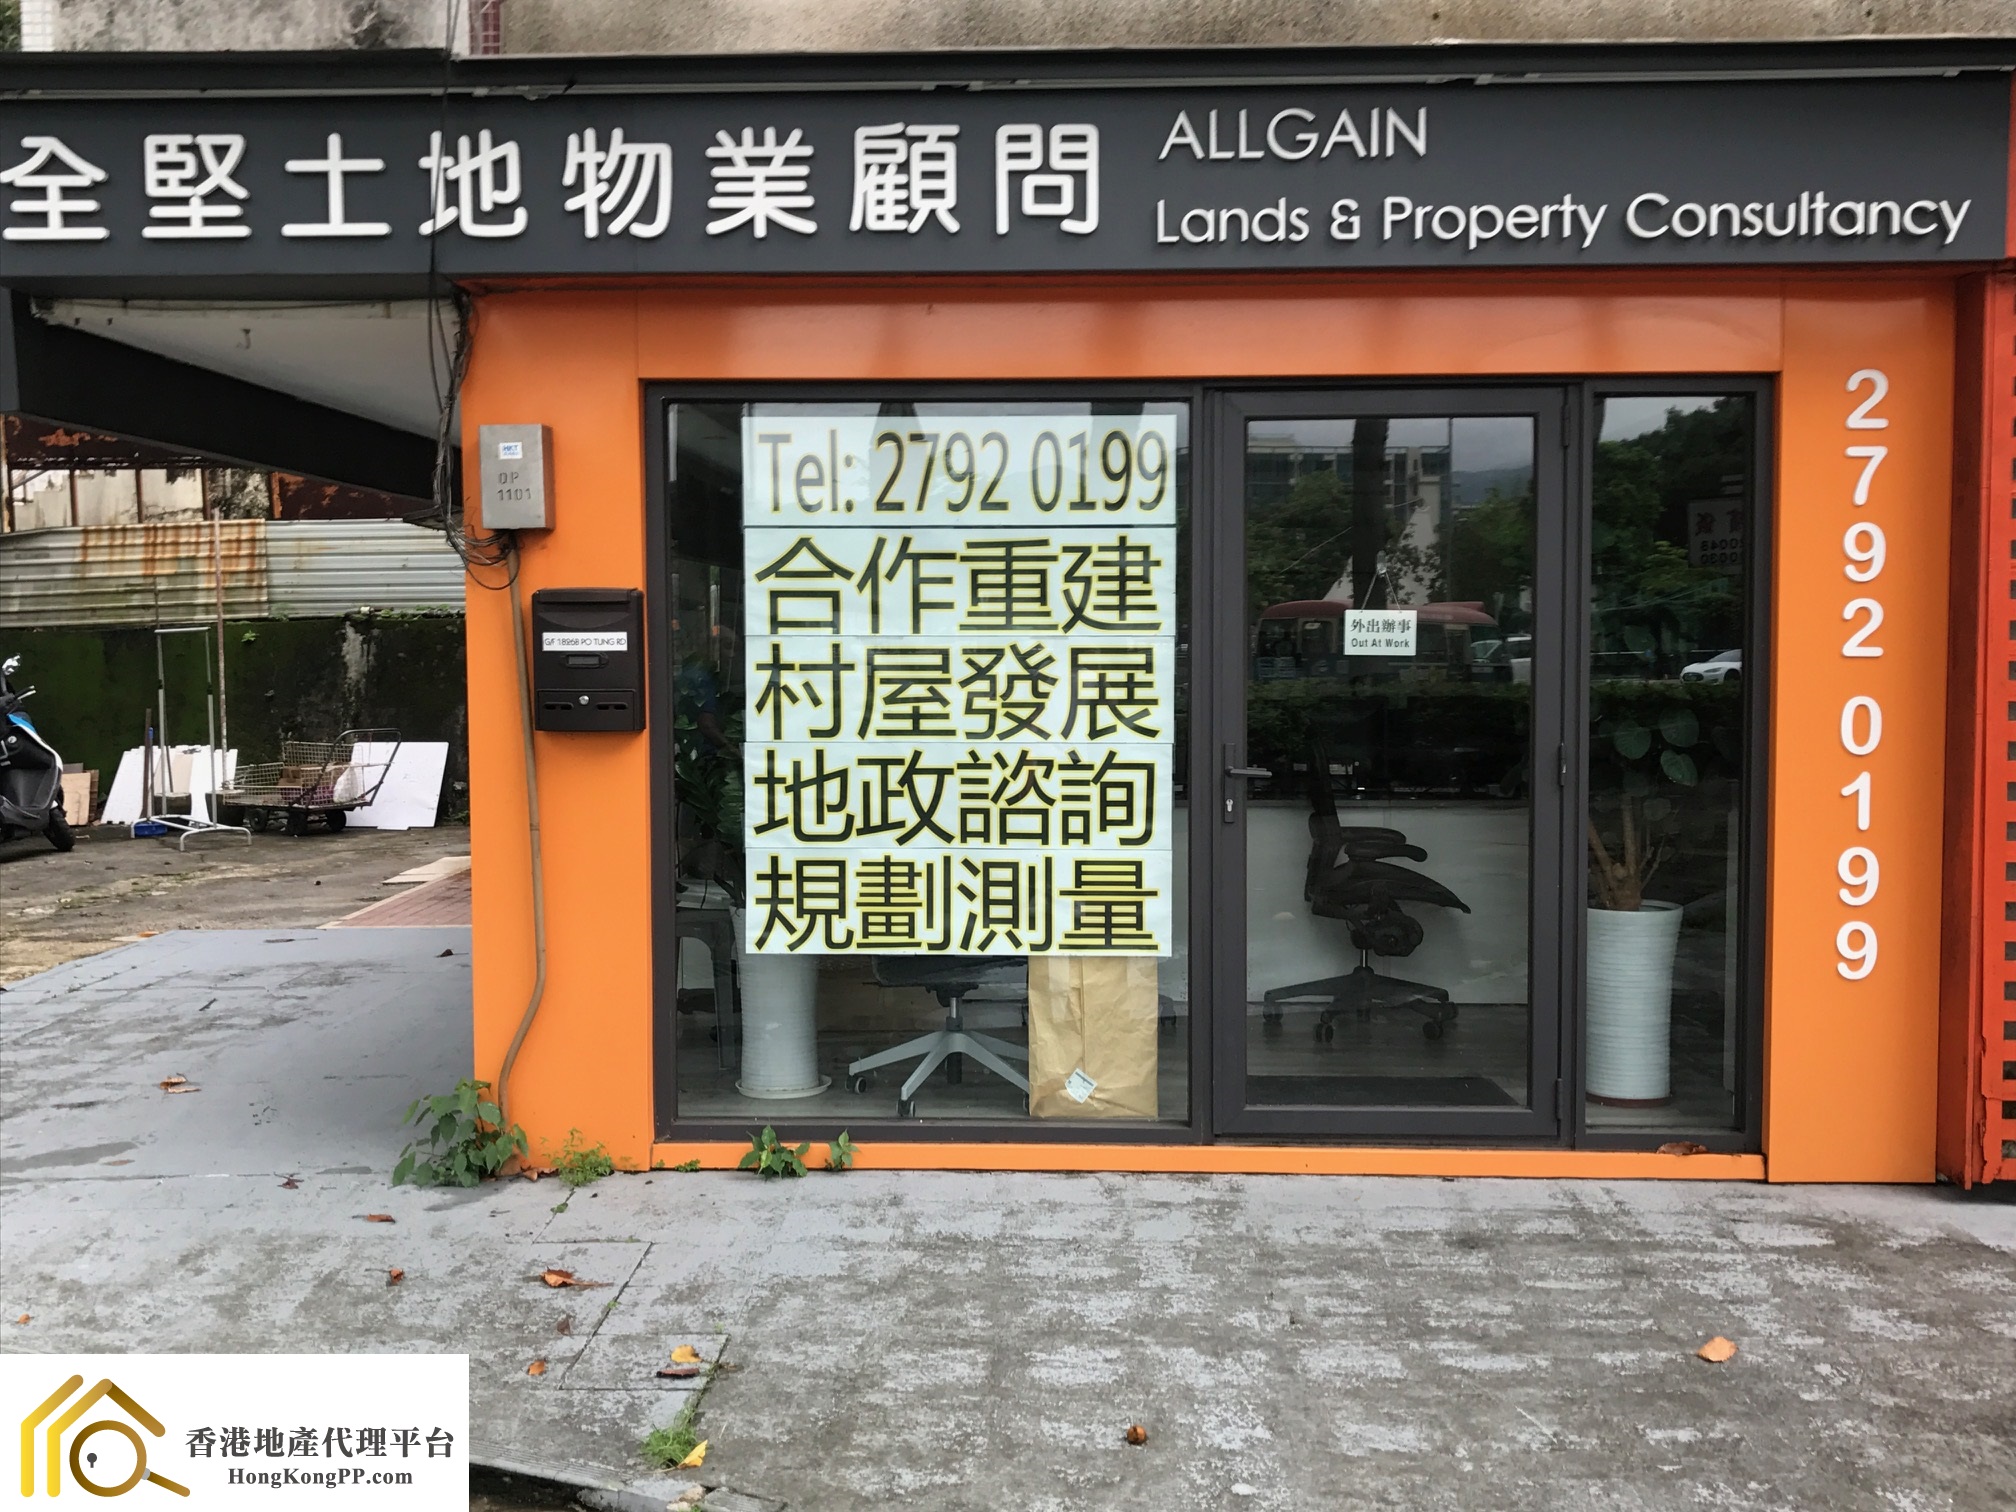 商舖地產代理: 全堅土地物業顧問 Allgain Lands & Property Consultancy Ltd